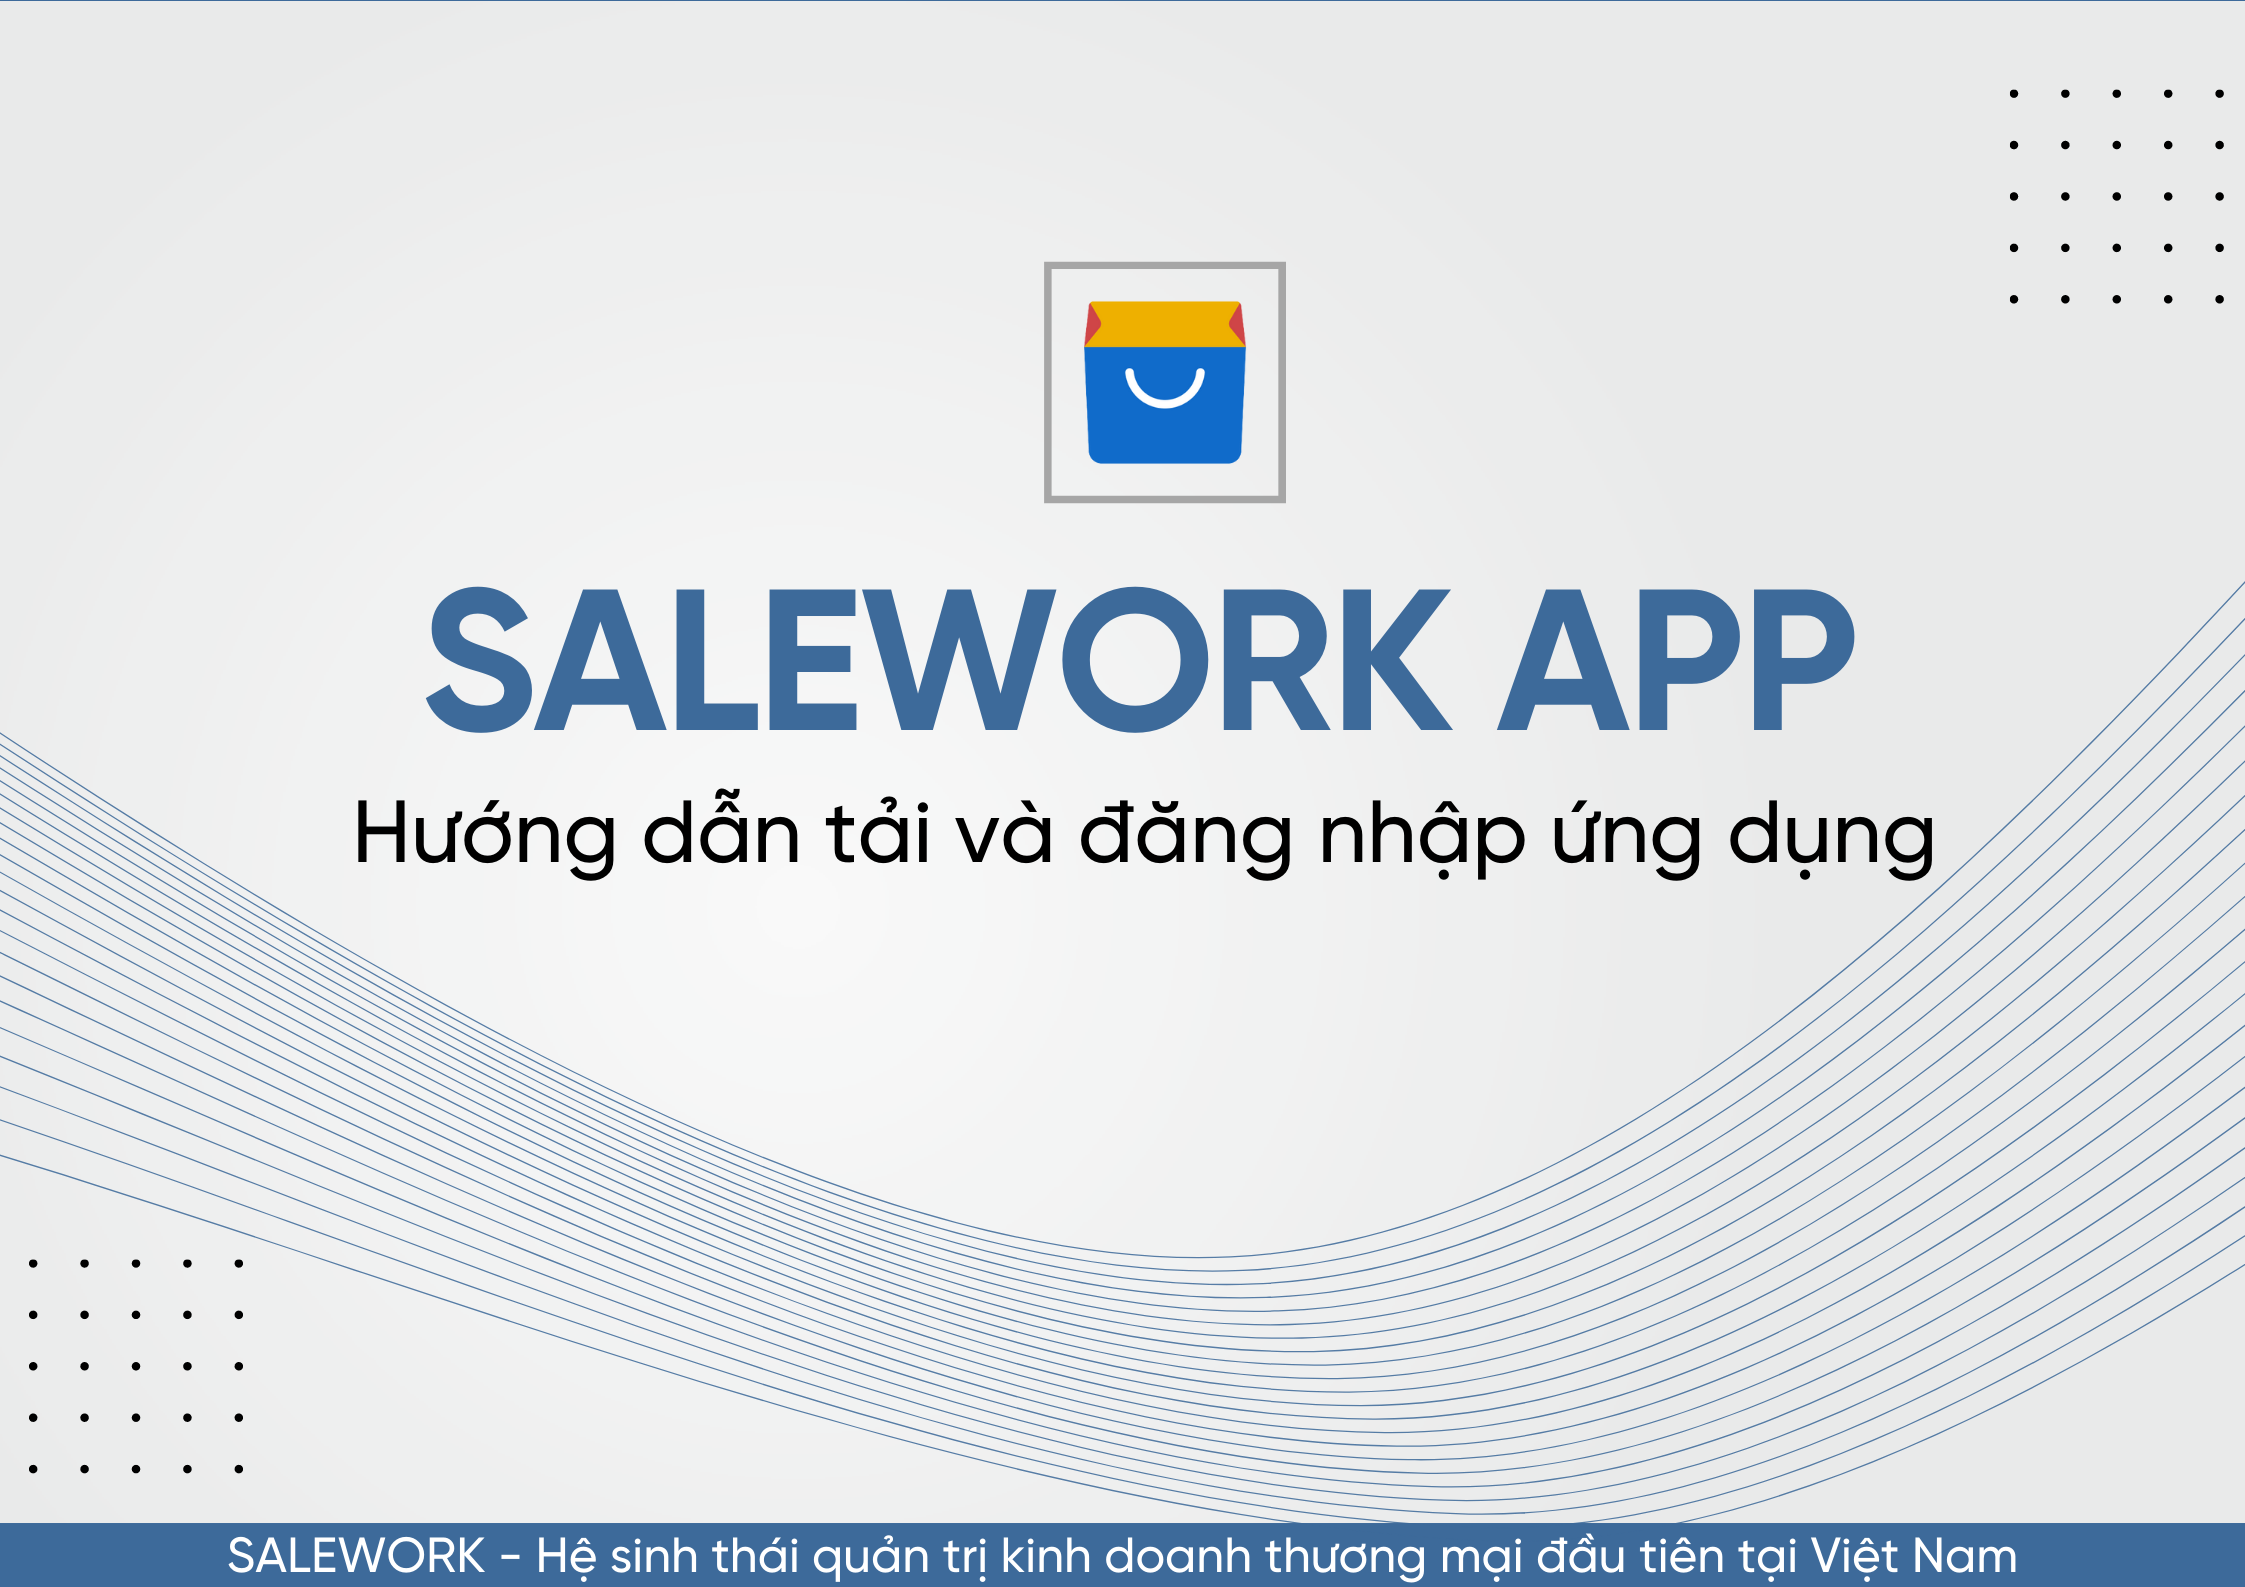 Hướng dẫn tải và đăng nhập ứng dụng Salework trên nền tảng di động - 61